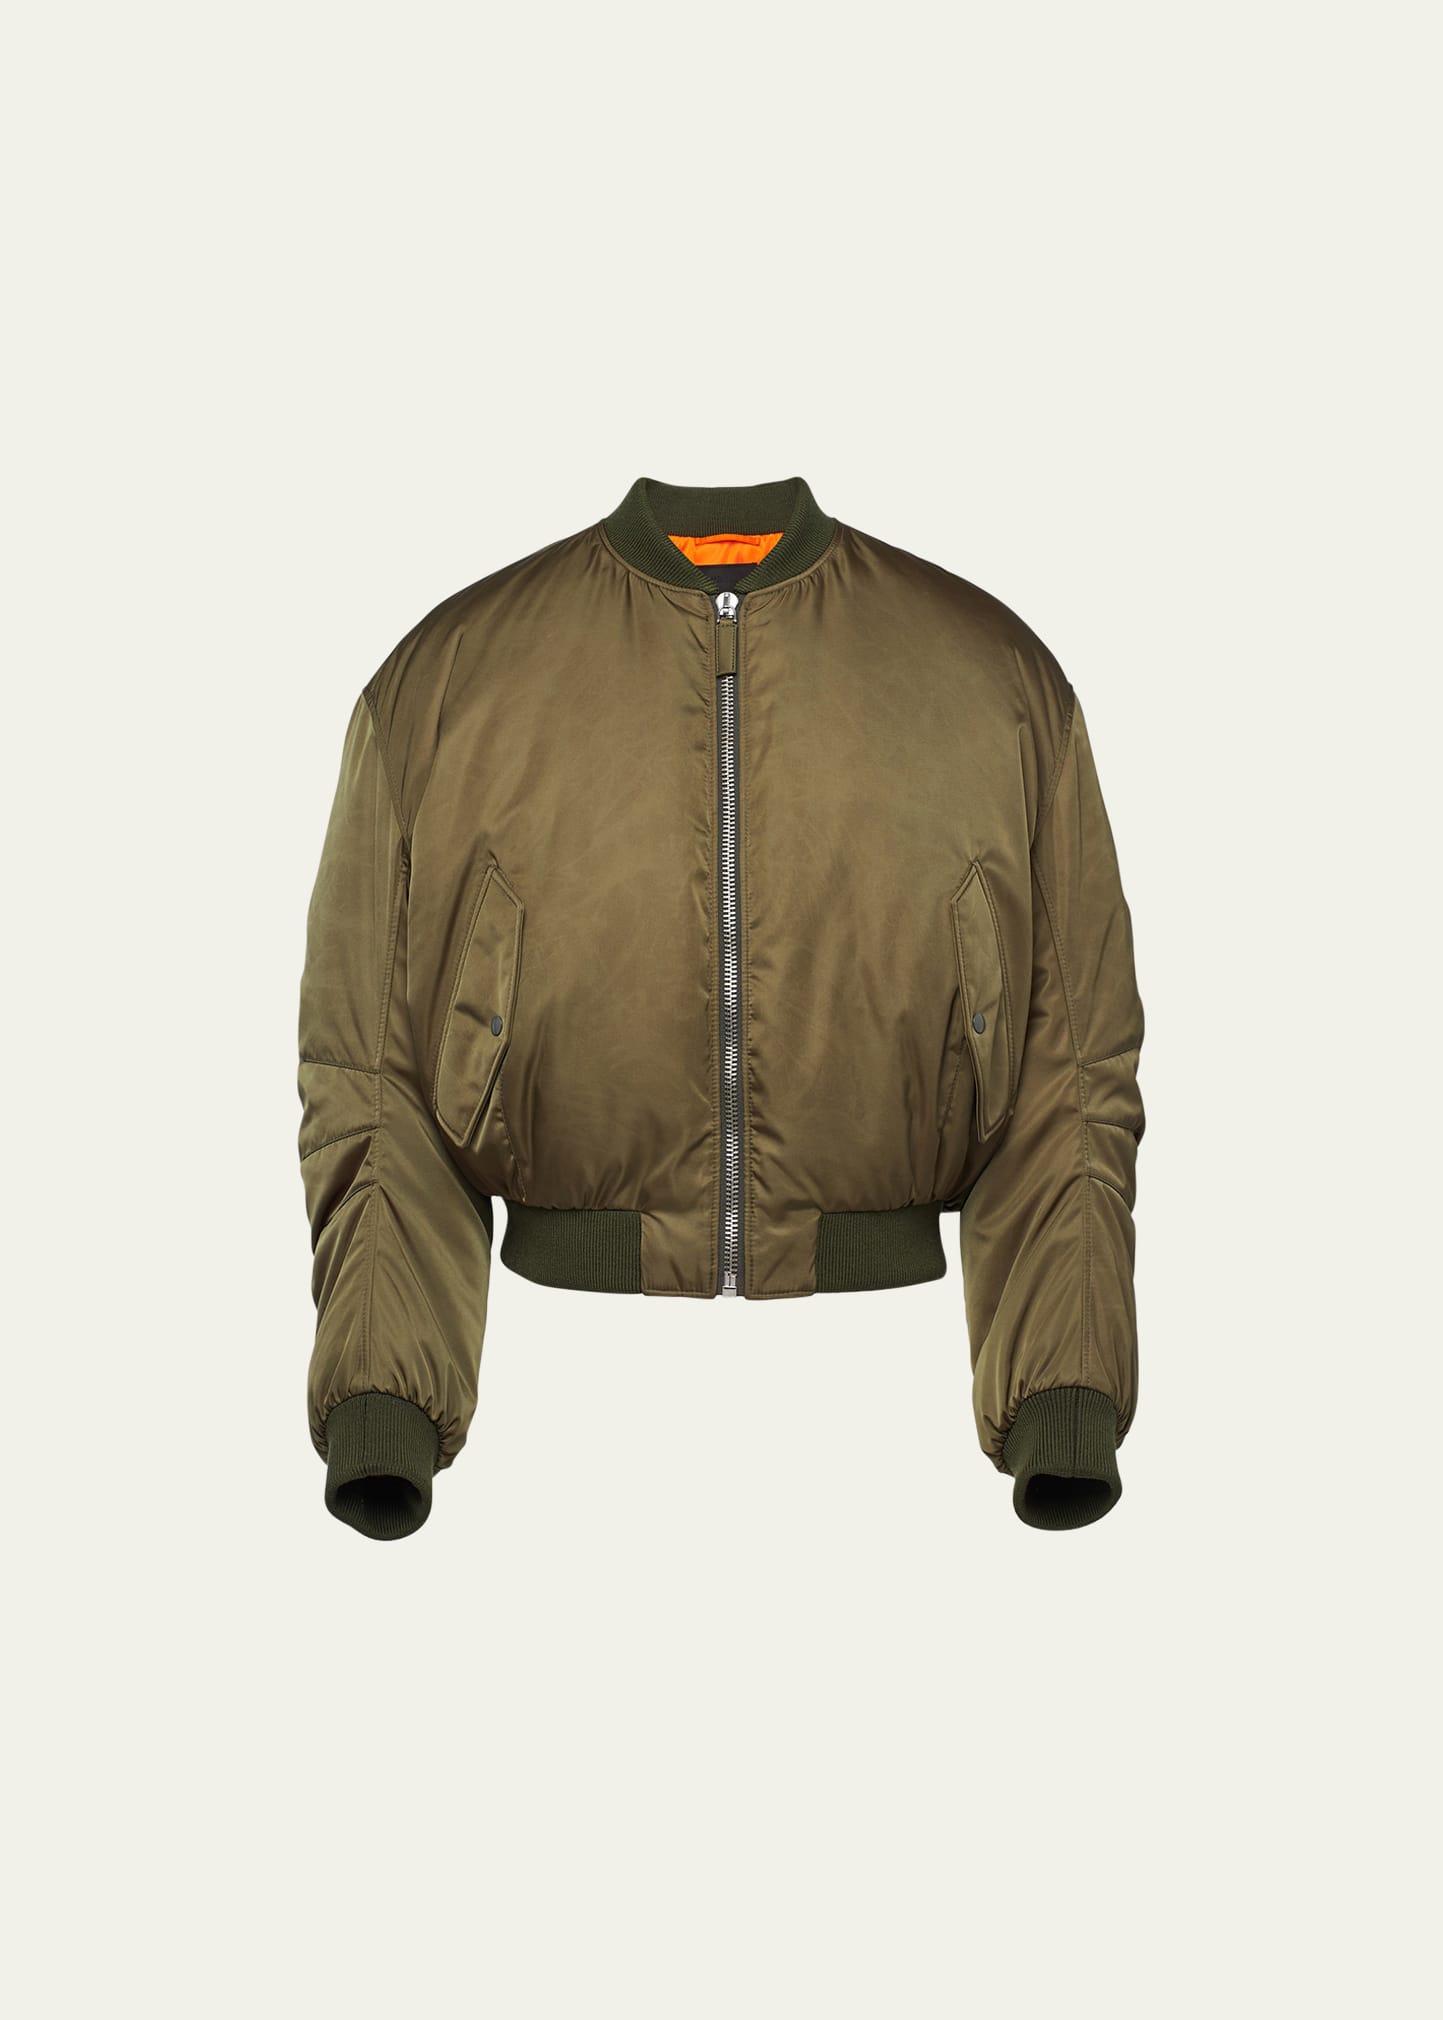 Prada Cropped Re-nylon Down Jacket In Military Green | ModeSens